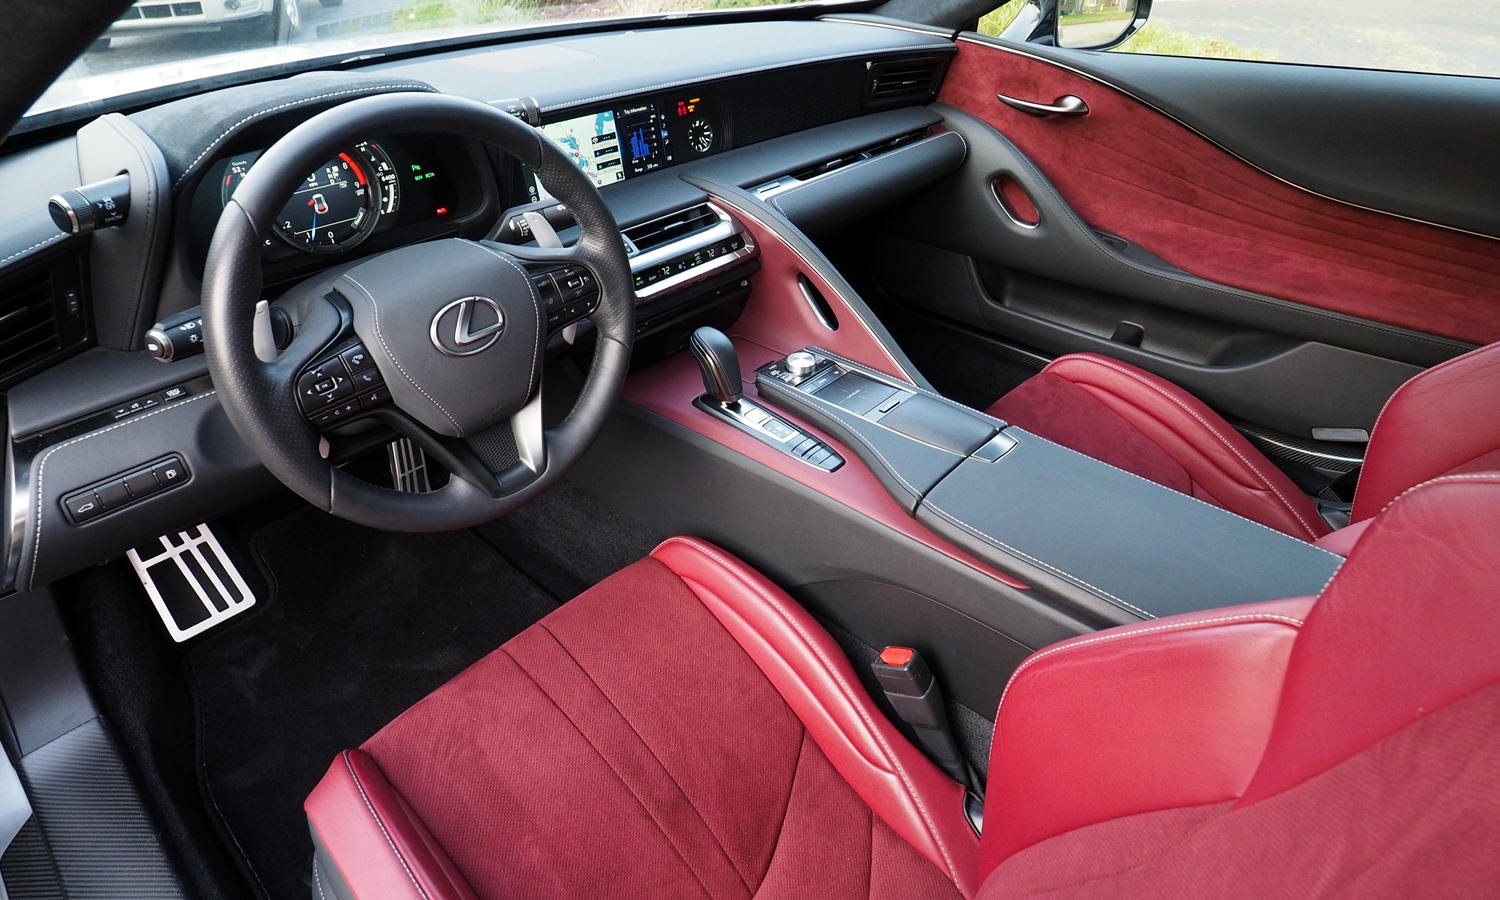 LC Reviews: Lexus LC 500 interior